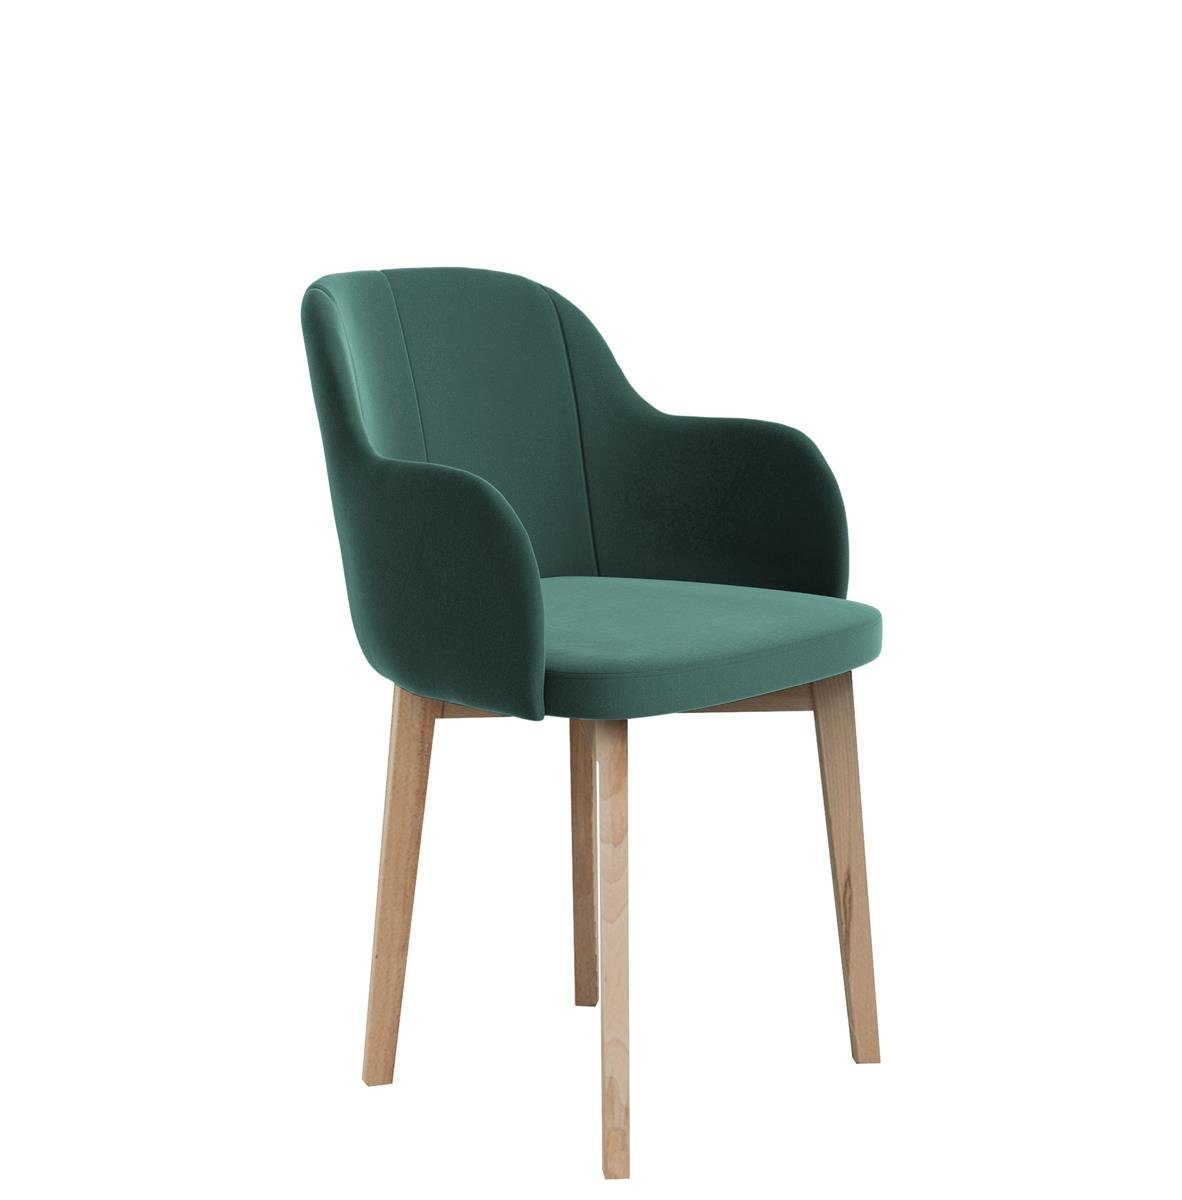 Beautysofa Polsterstuhl Relax (aus Veloursstoff), Stuhl für Wohnzimmer oder Büro, Relaxstuhl mit Holzbeine Grün (riviera 38) | Polsterstühle